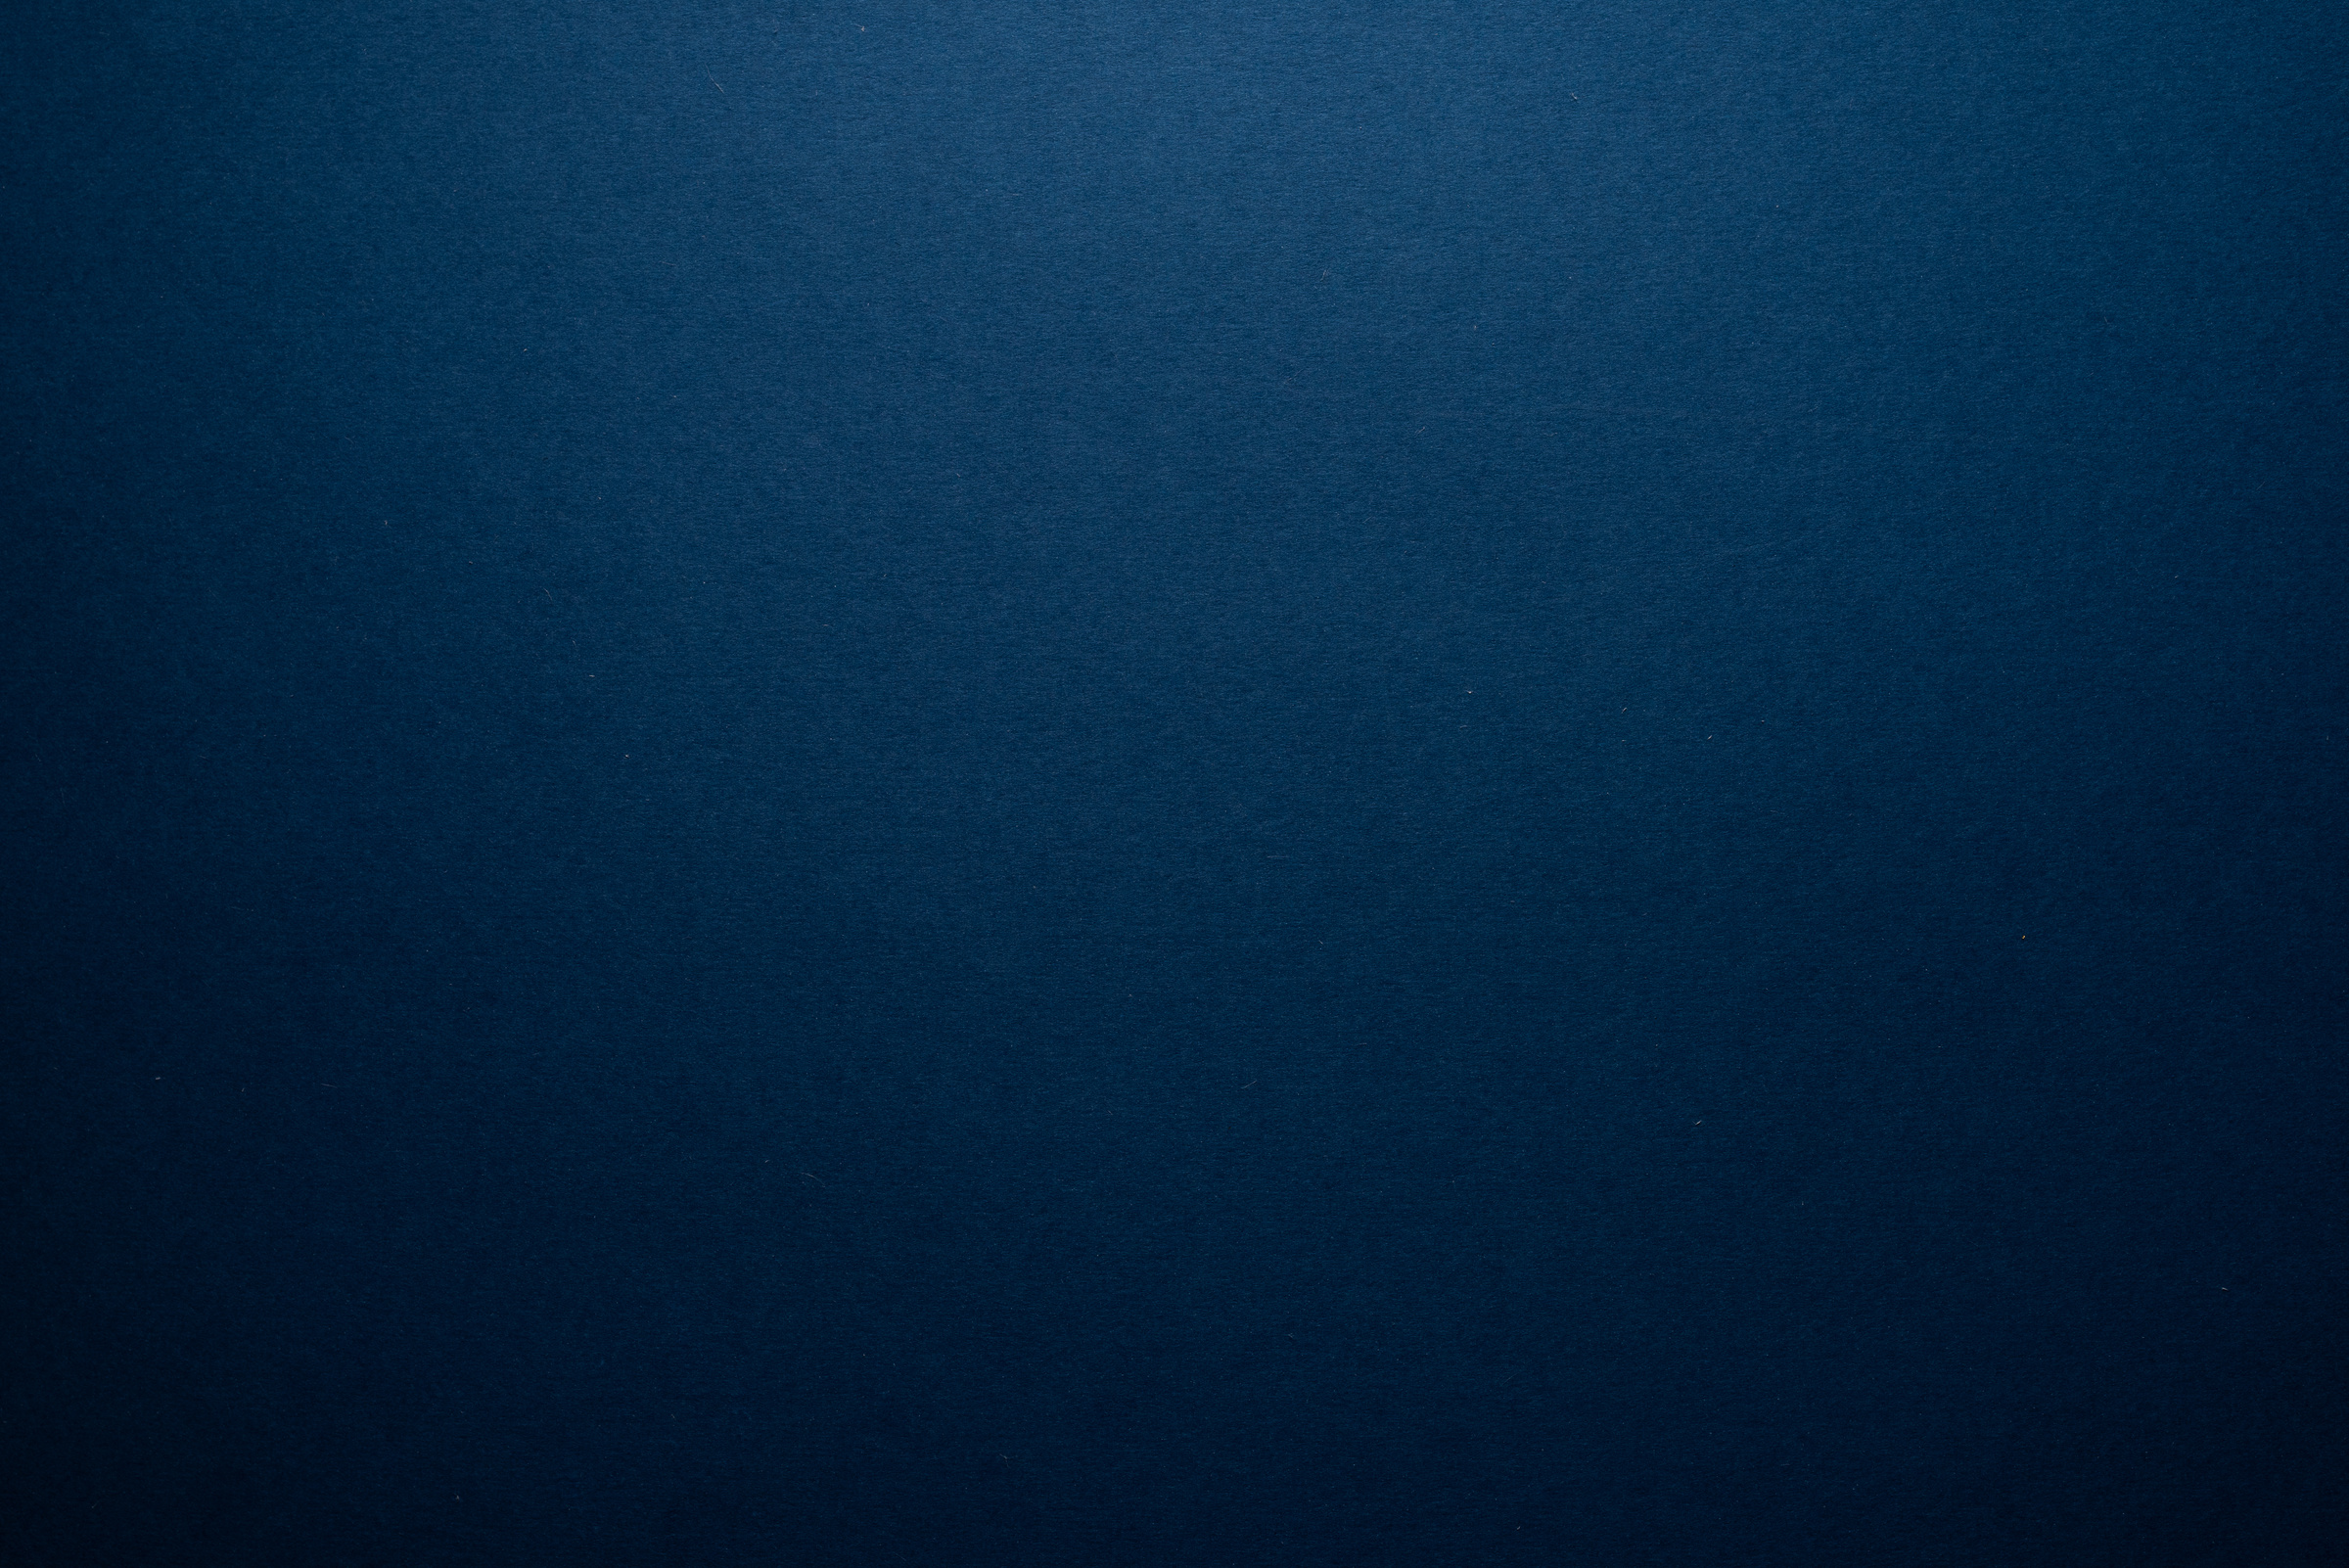 Empty dark blue background.